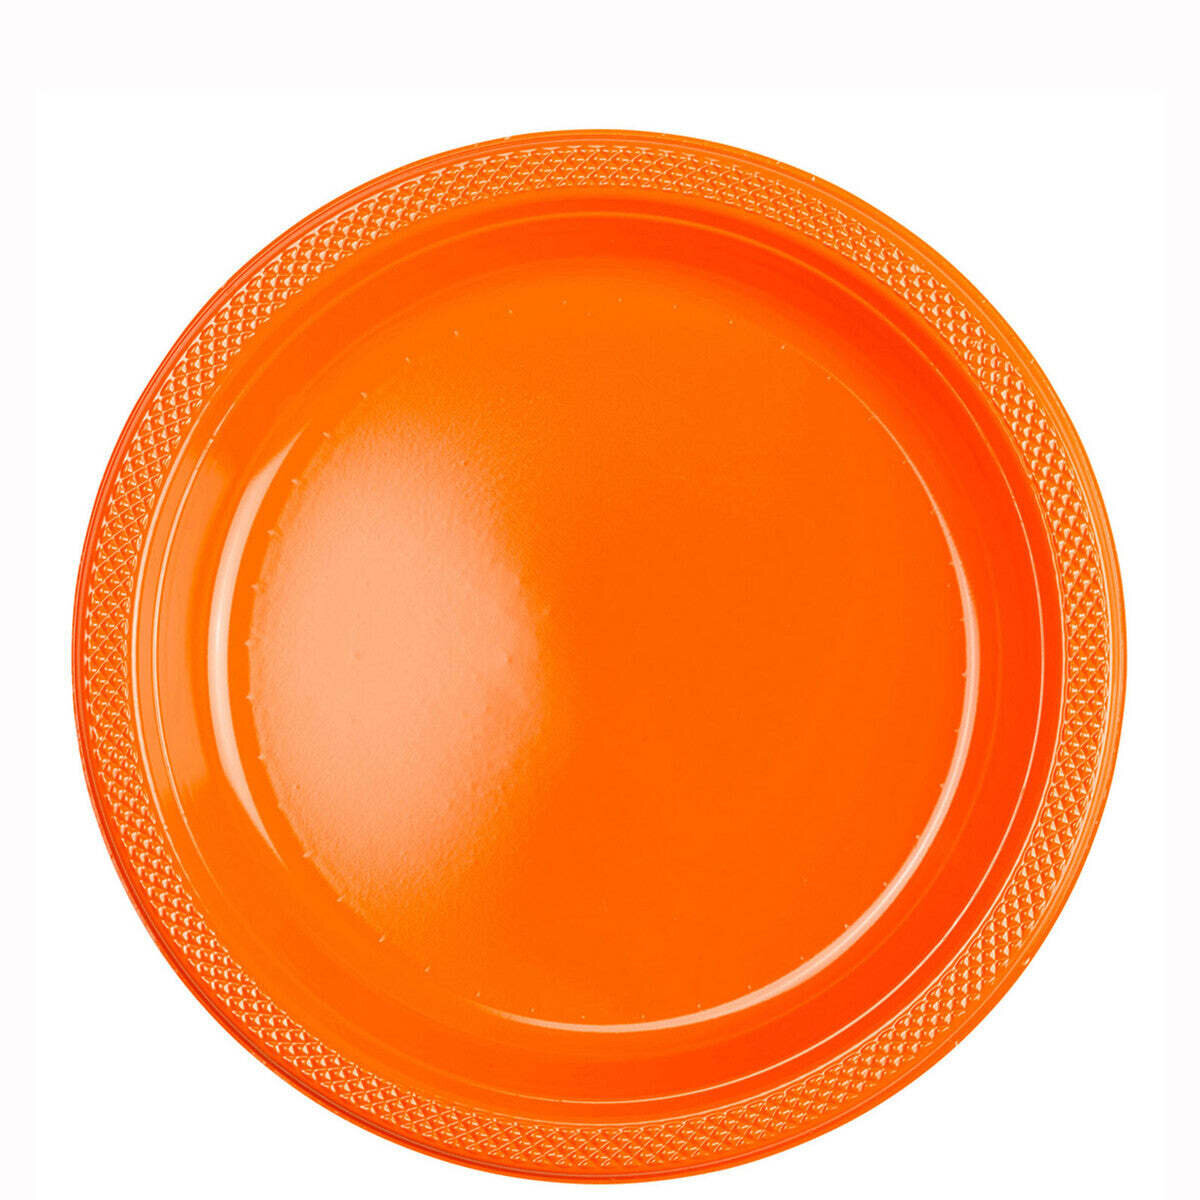 orange peel 9 inch plates